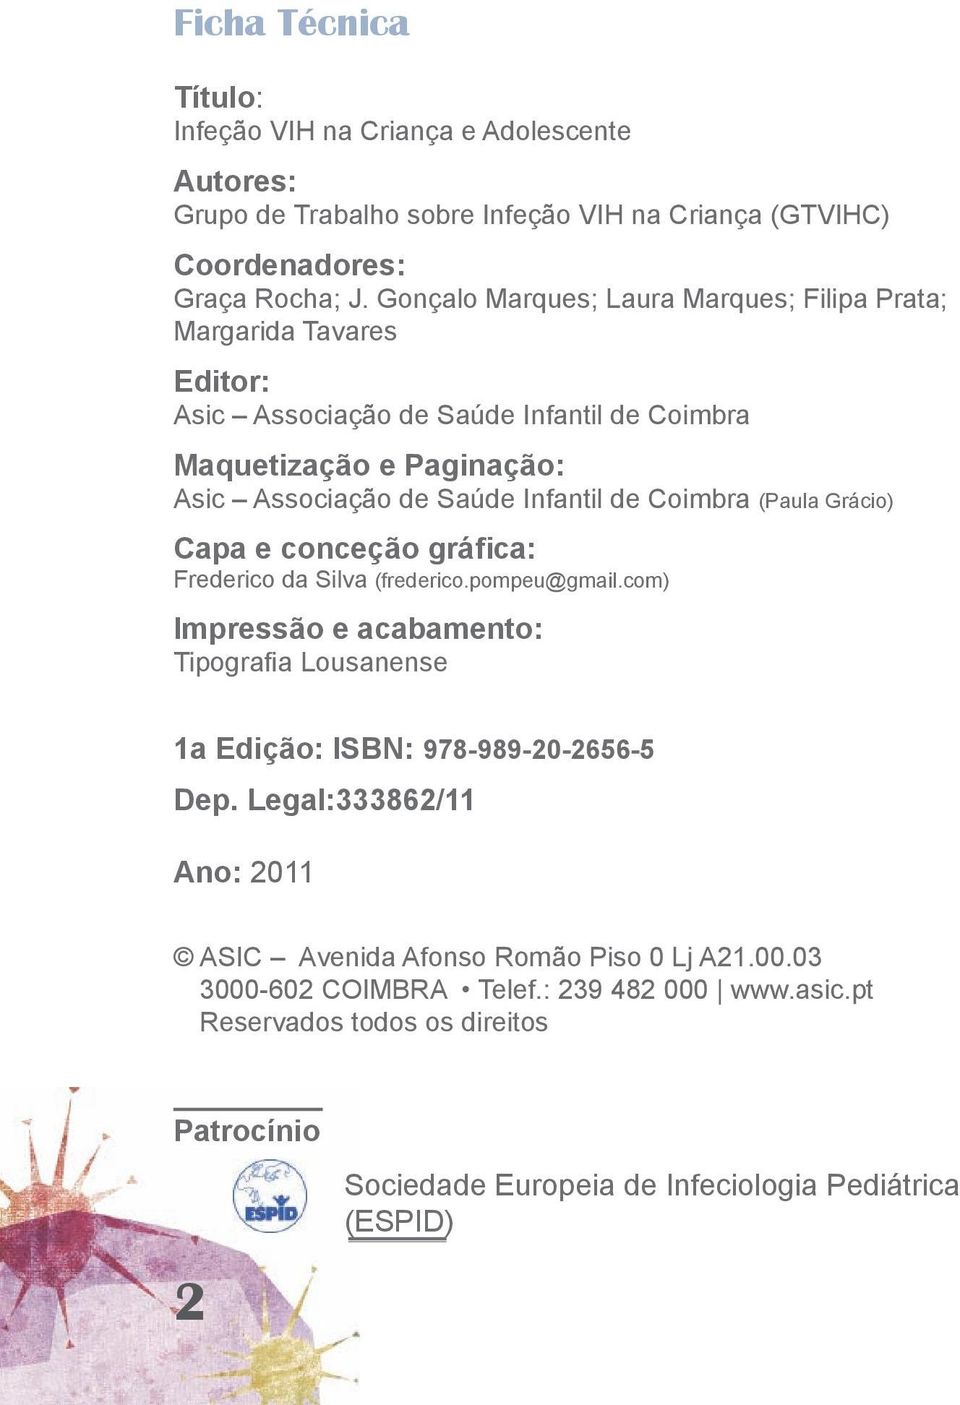 Coimbra (Paula Grácio) Capa e conceção gráfica: Frederico da Silva (frederico.pompeu@gmail.com) Impressão e acabamento: Tipografia Lousanense 1a Edição: ISBN: 978-989-20-2656-5 Dep.